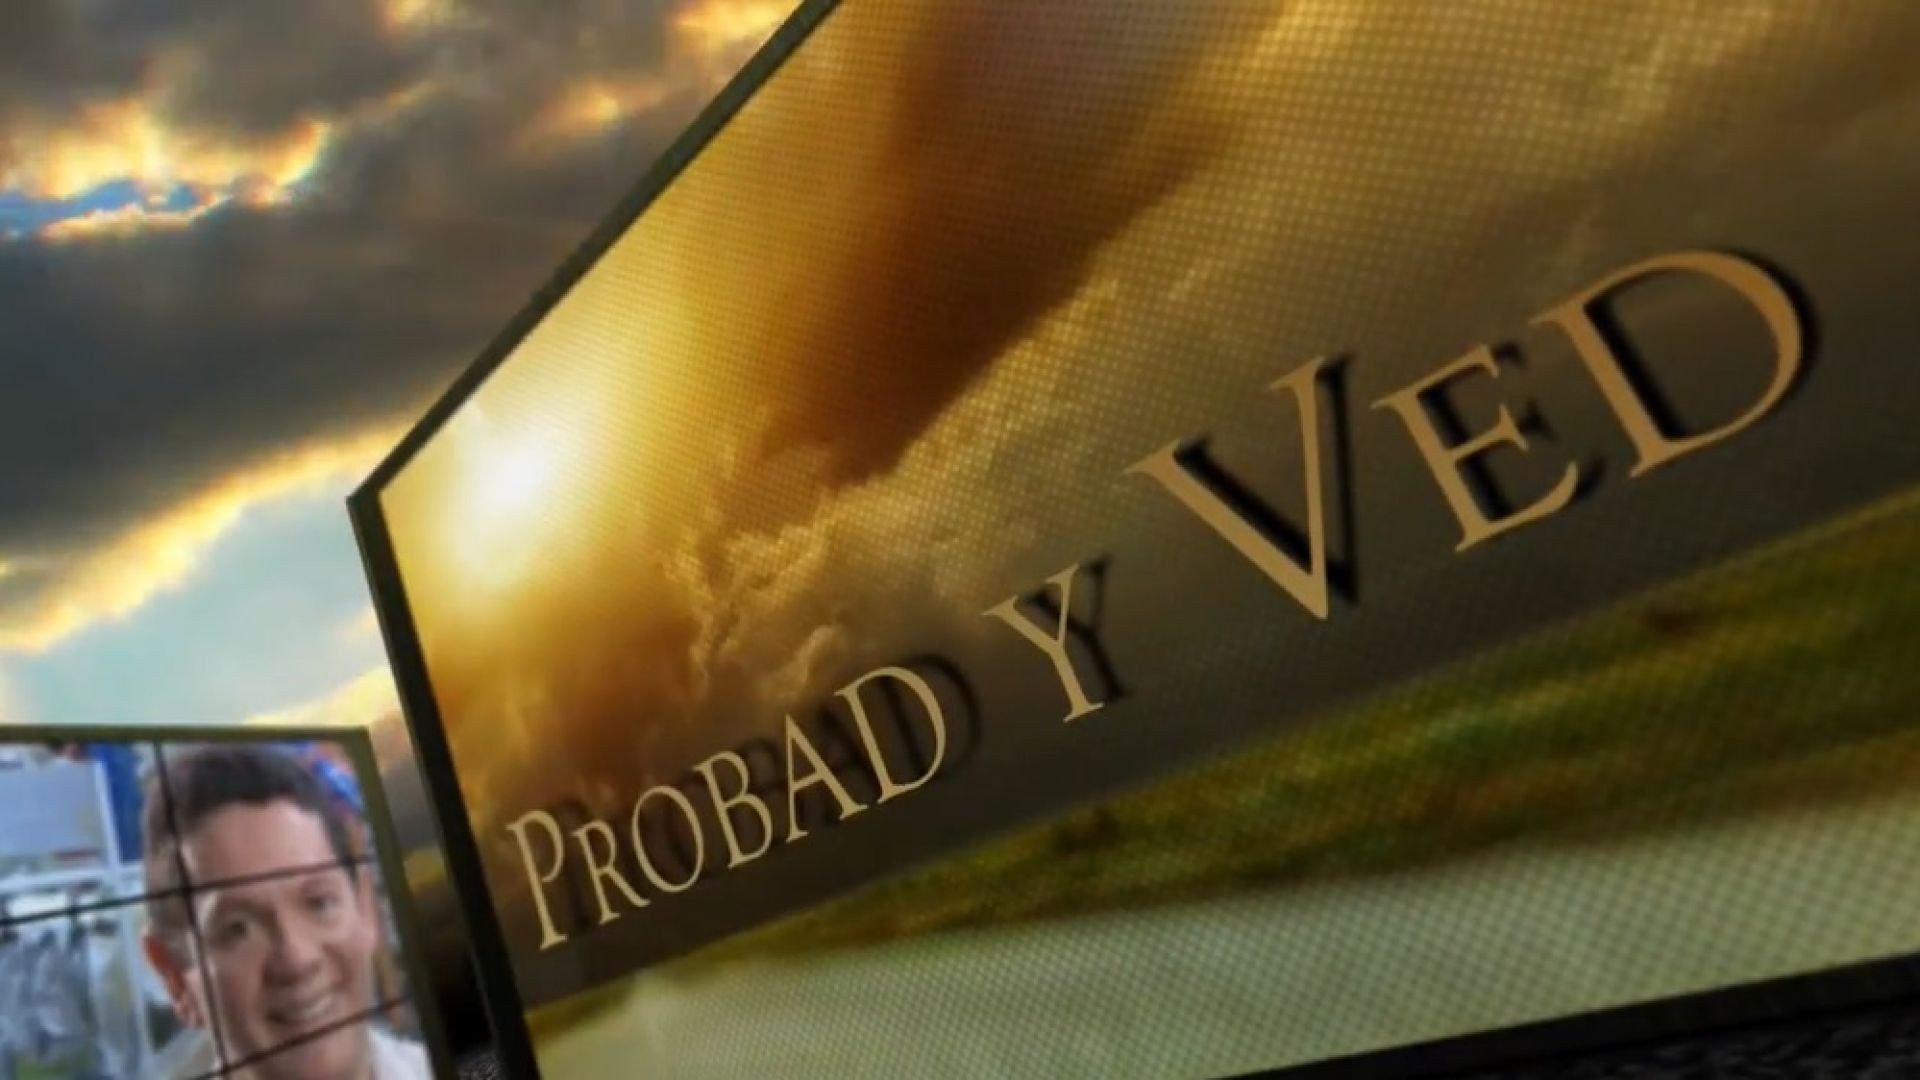 Probad y Ved 2013 - Comunicando esperanza - 16/Mar